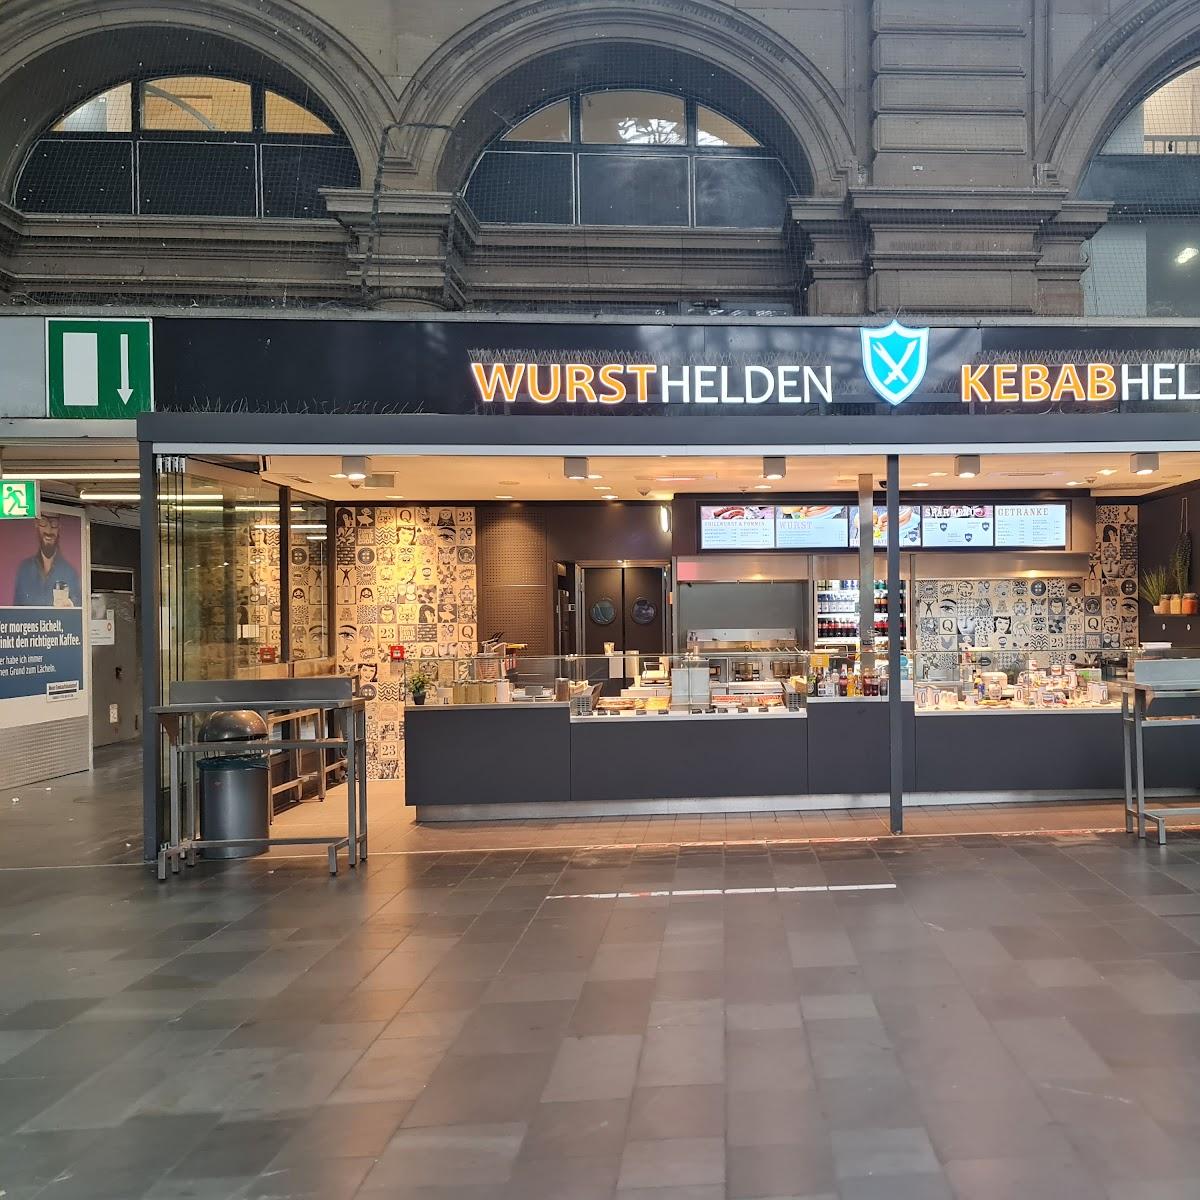 Restaurant "Wursthelden" in Frankfurt am Main